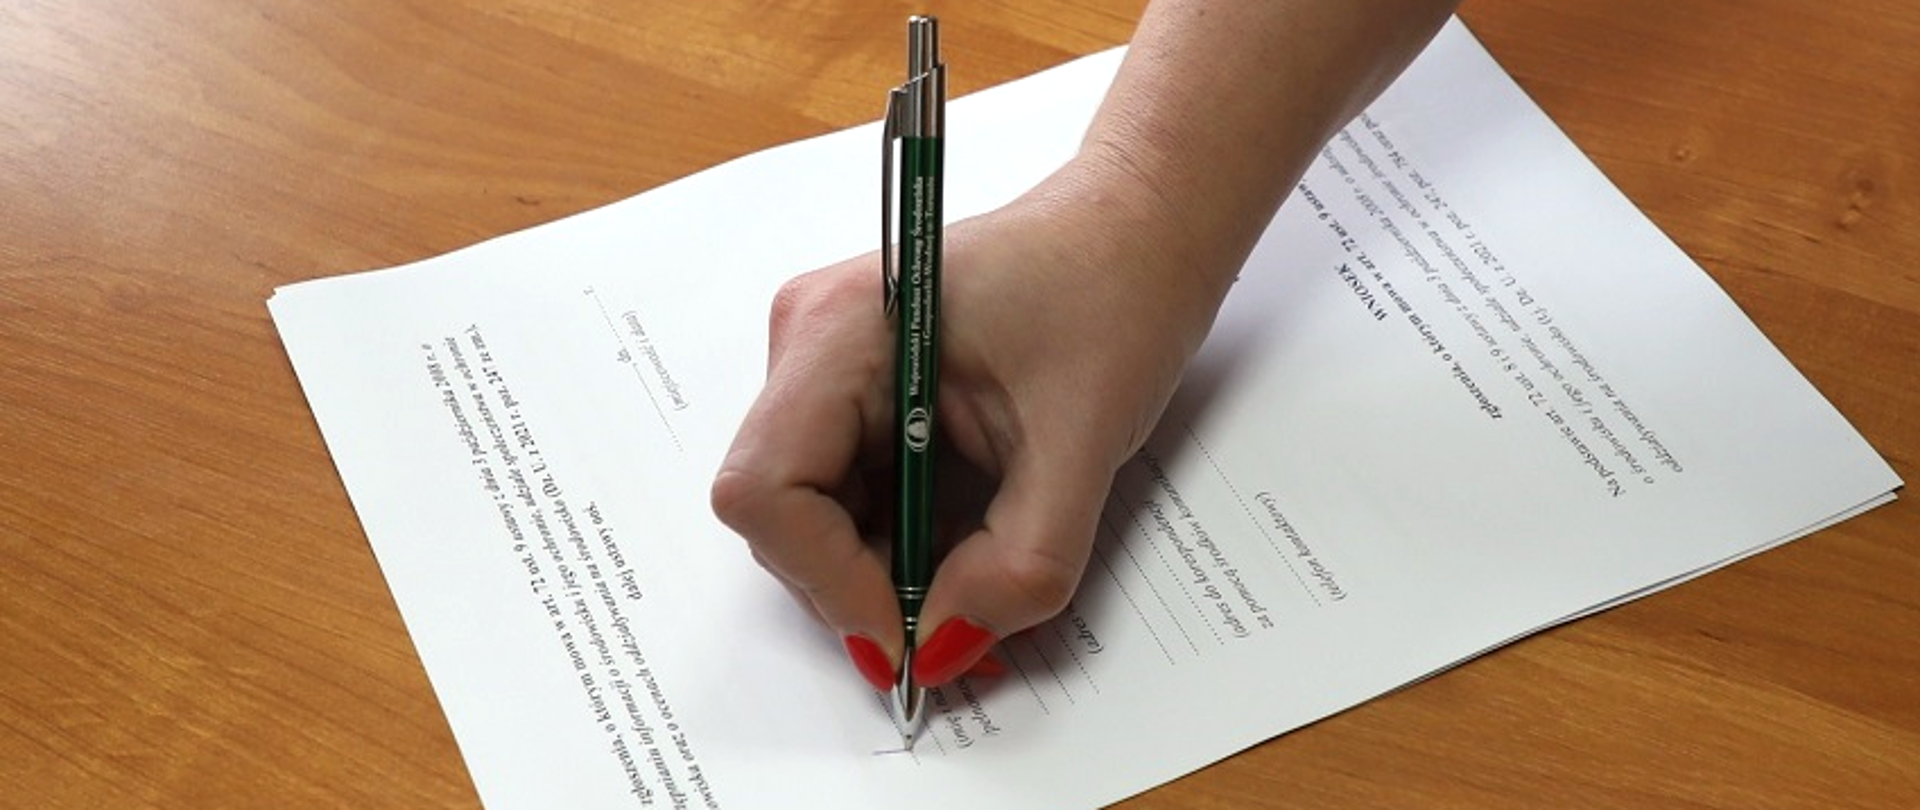 Formularz podpisywany zielonym długopisem